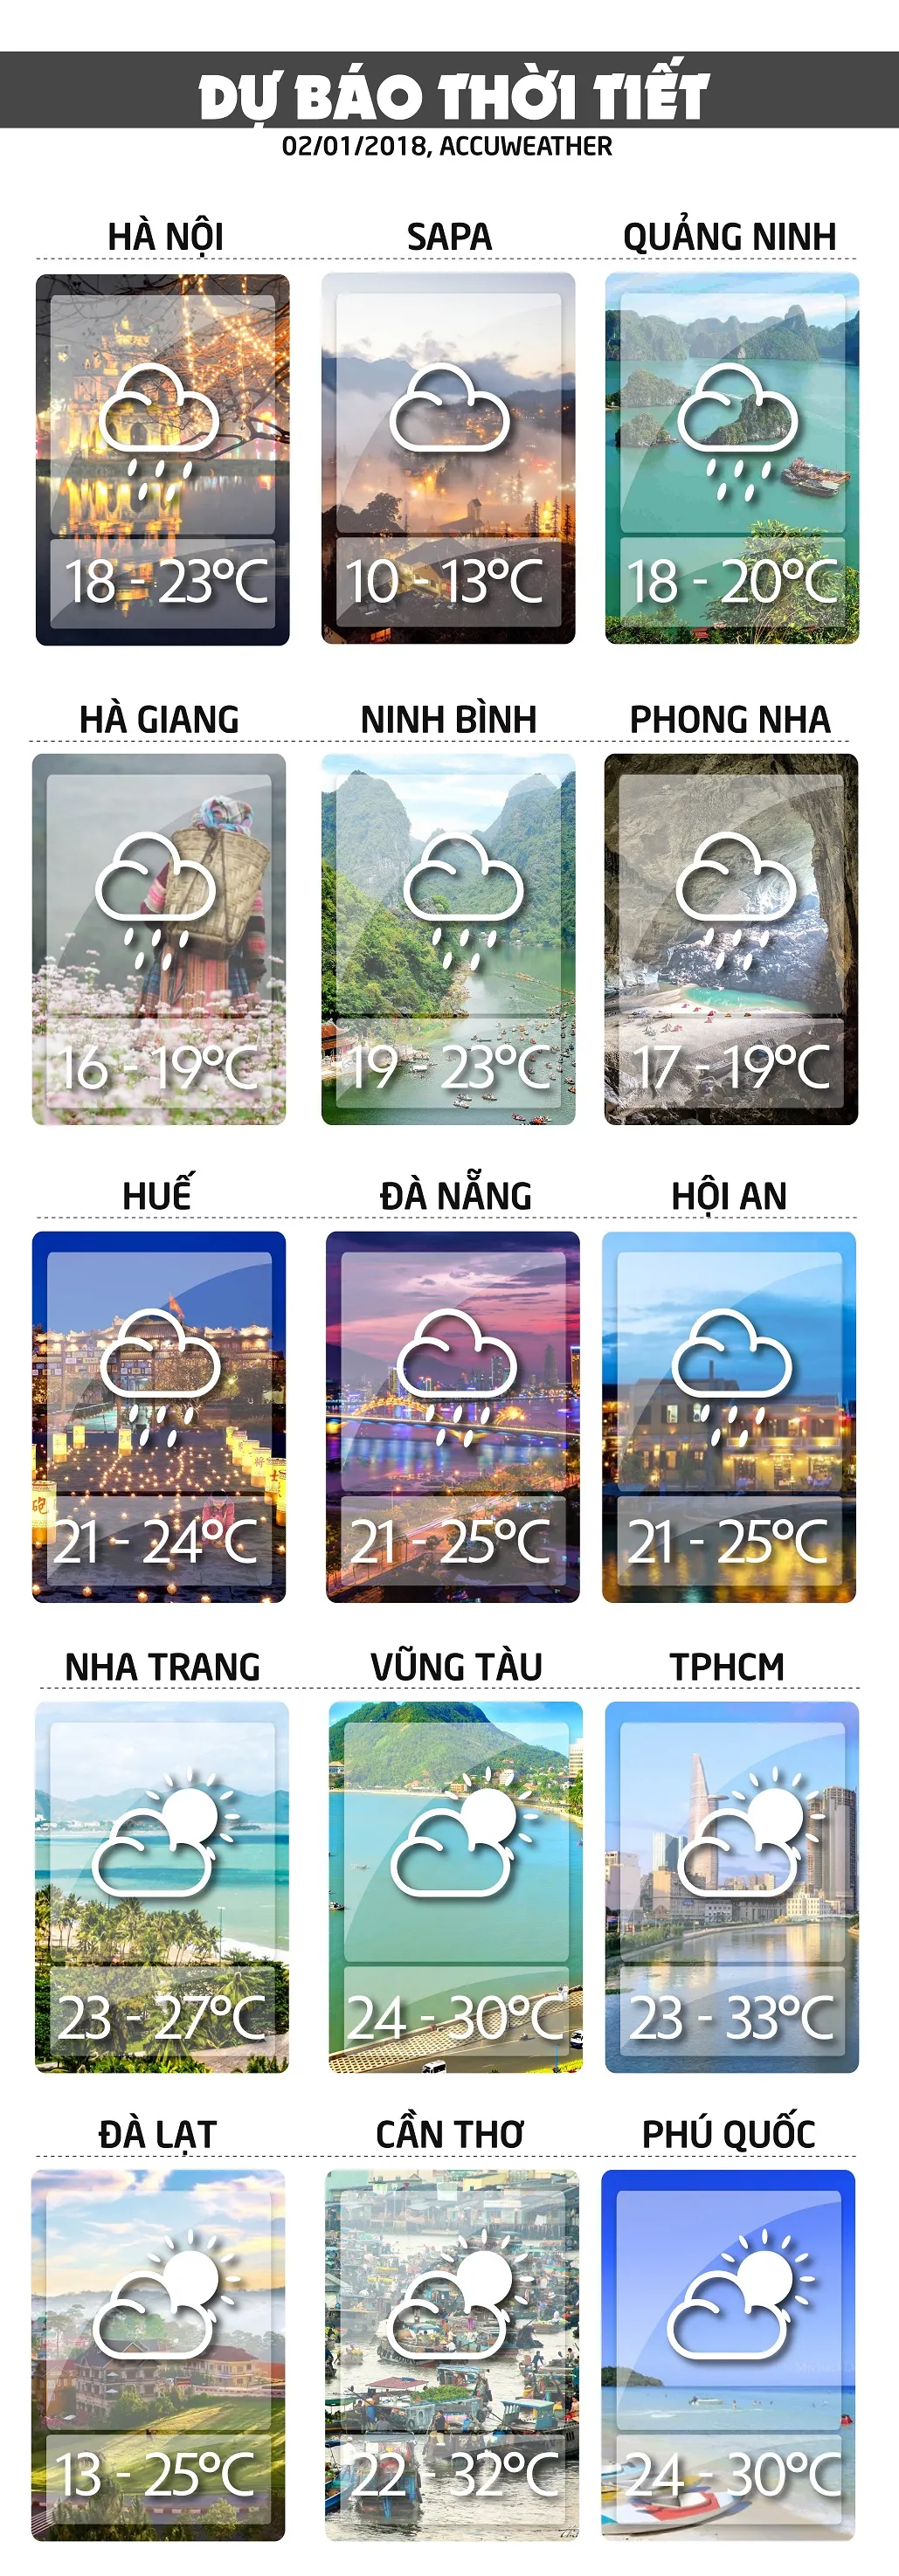 Dự báo thời tiết ngày mai 2/1: Nền nhiệt tăng nhẹ ở miền Bắc và miền Trung voh.com.vn